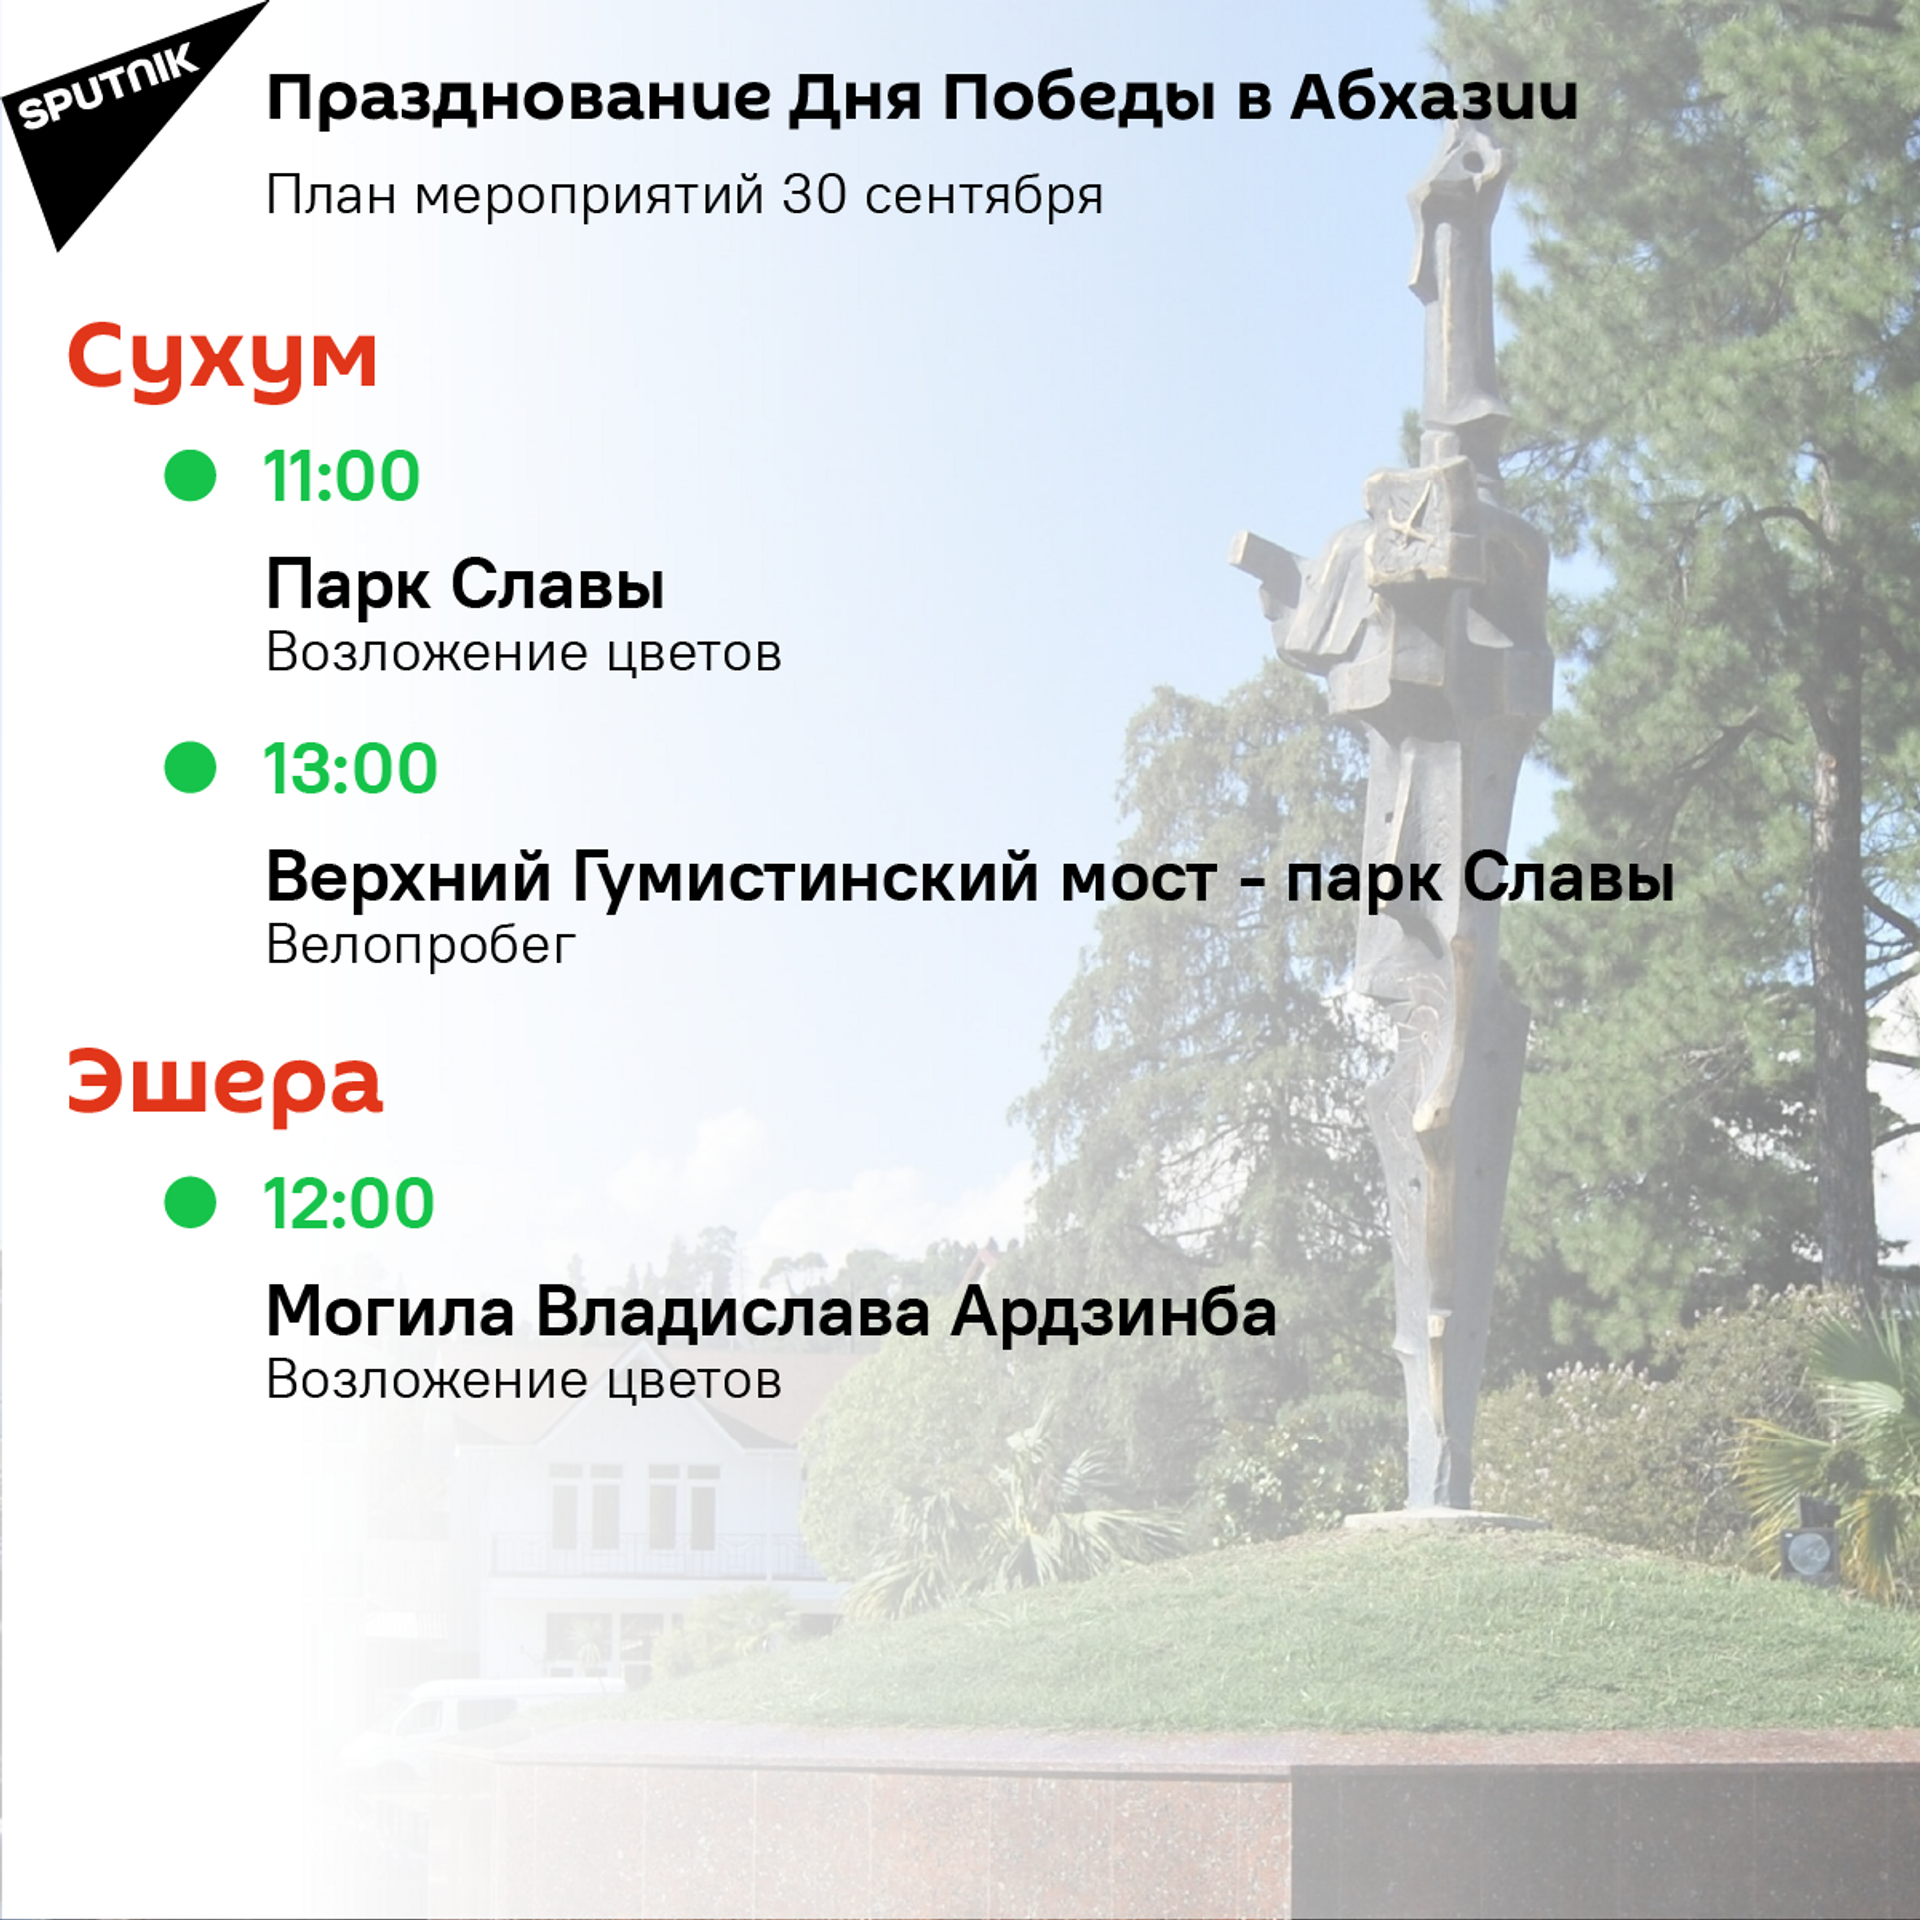 План мероприятий на 30 сентября  - Sputnik Абхазия, 1920, 12.10.2021